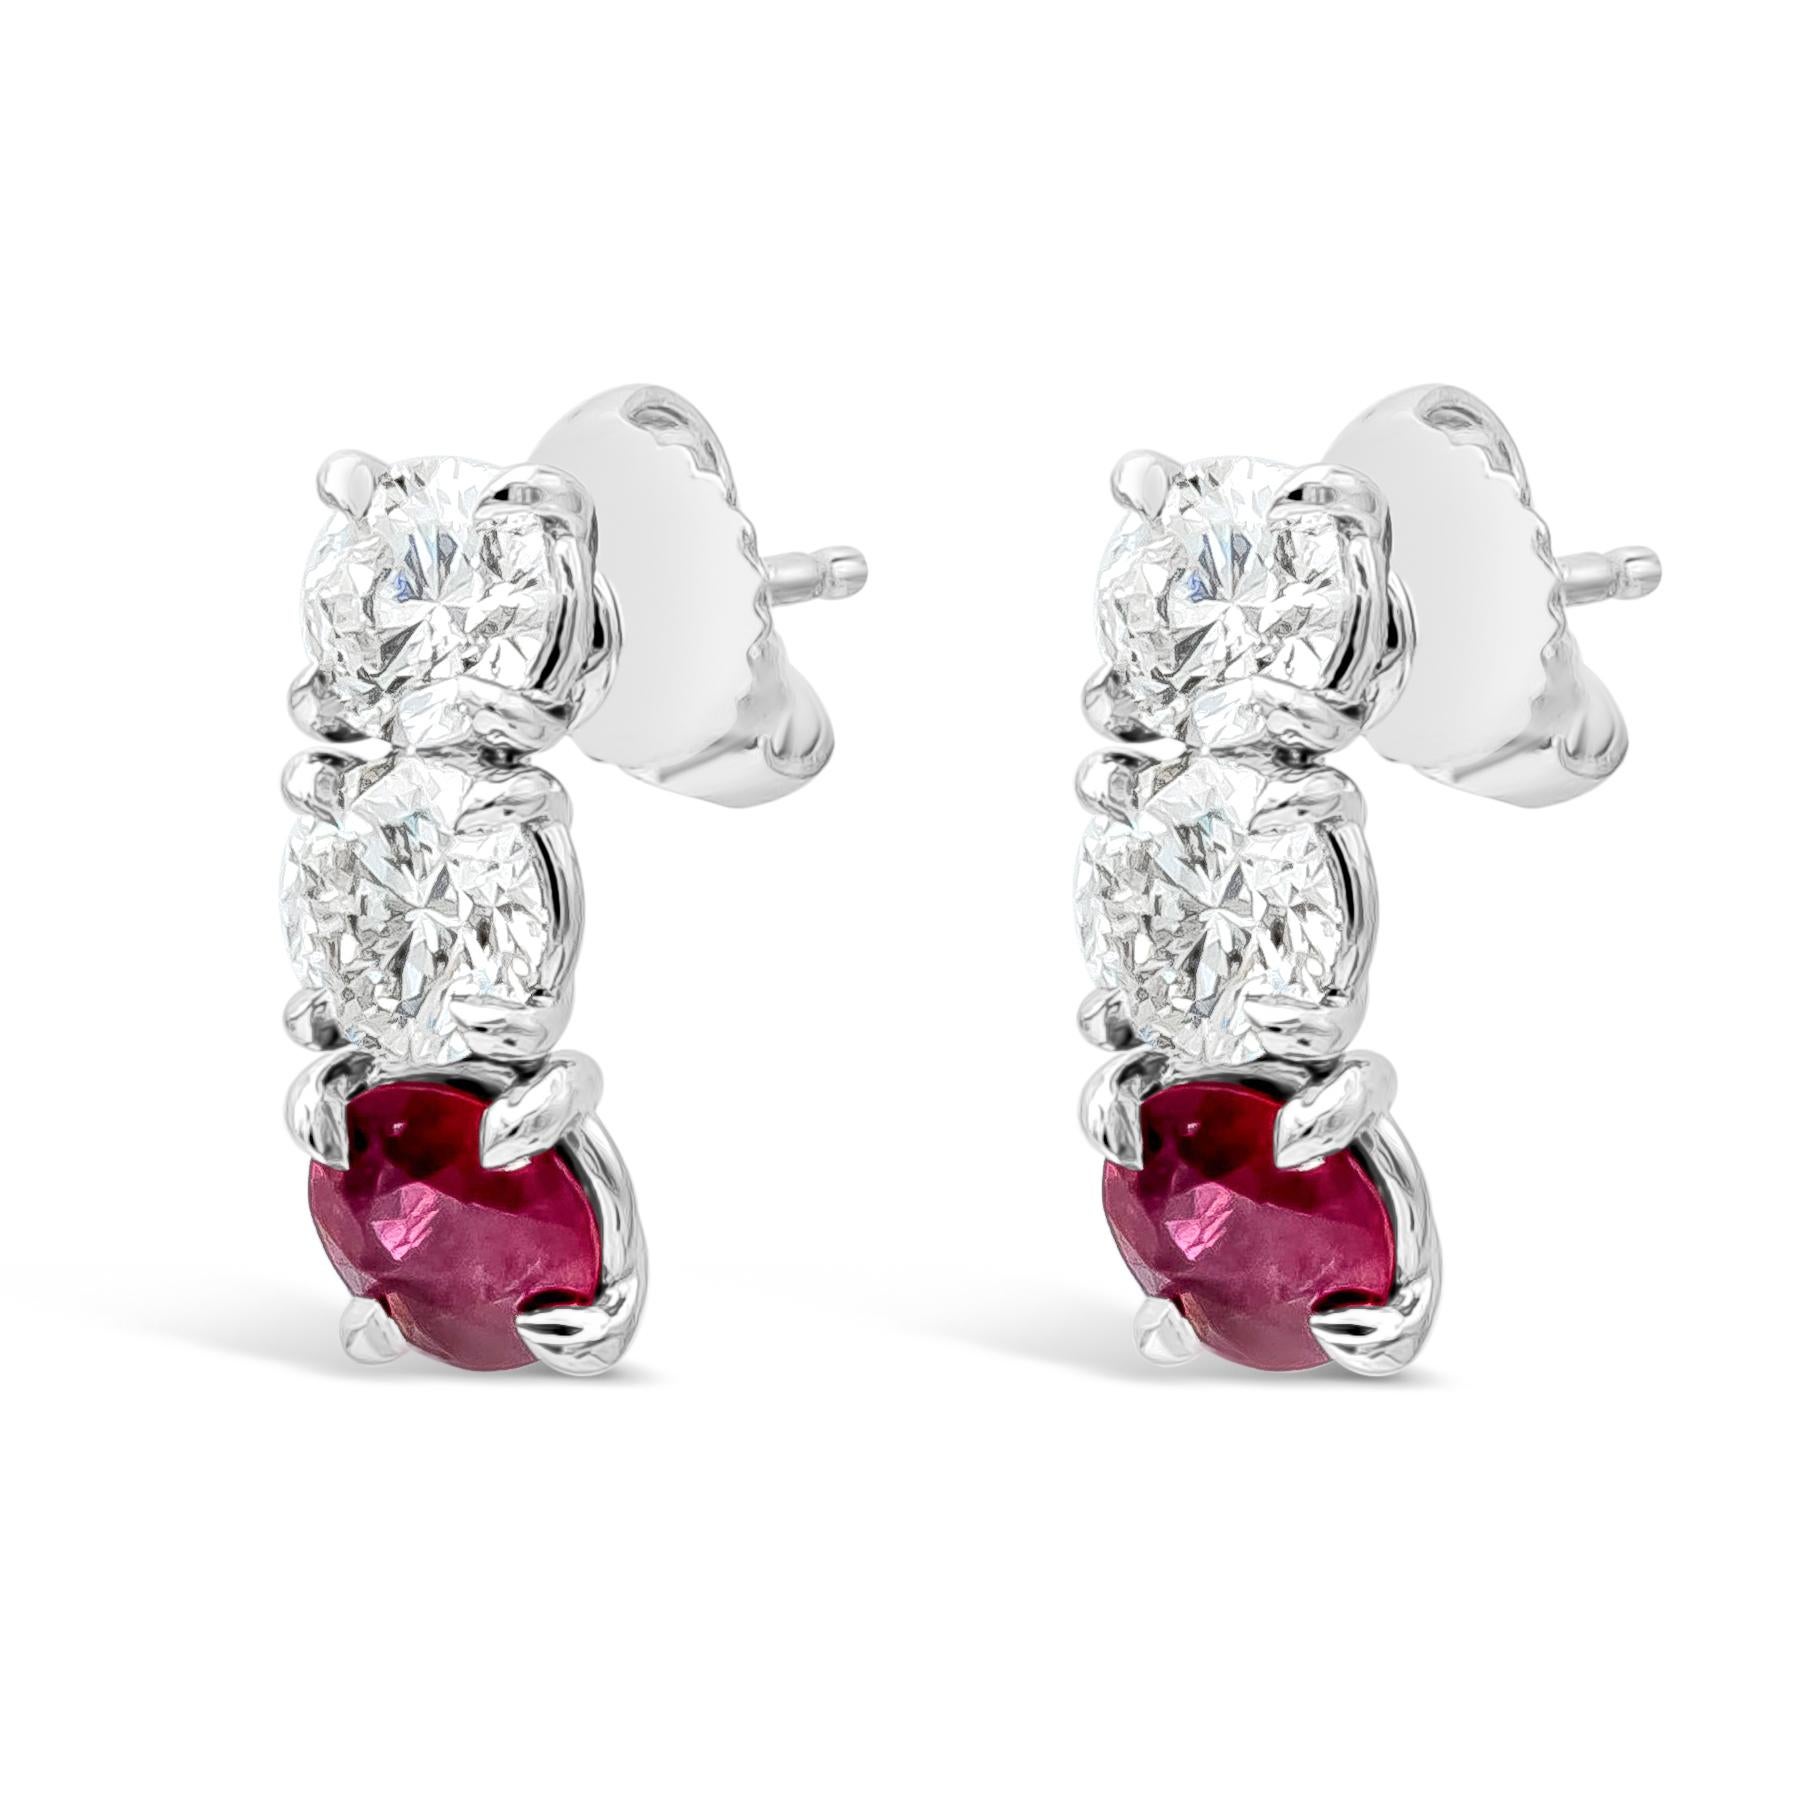 Ein einfaches und sehr stilvolles Schmuckstück ist ein Drei-Stein-Ohrring mit Burma-Rubinen von insgesamt 1,39 Karat und runden weißen Diamanten von insgesamt 1,72 Karat, Farbe F und Reinheit SI. In einer klassischen 4-Zacken-Fassung, aus Platin.